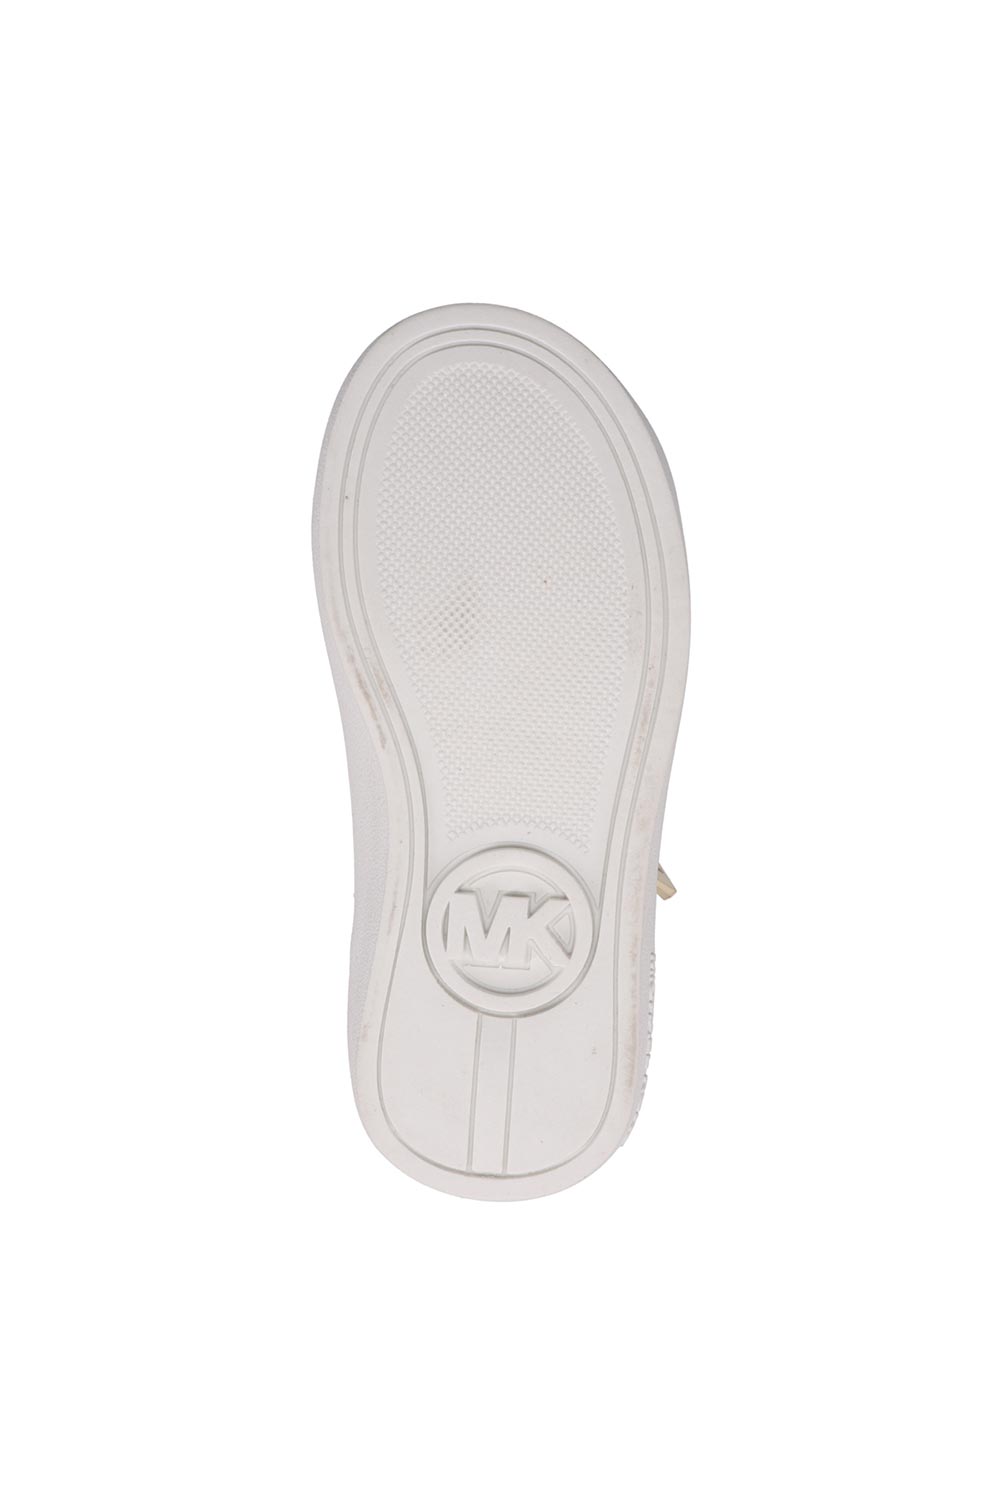 מייקל קורס נעלי סניקרס Jem Alex בצבע שמנת לתינוקות-Michael Kors-21-נאקו